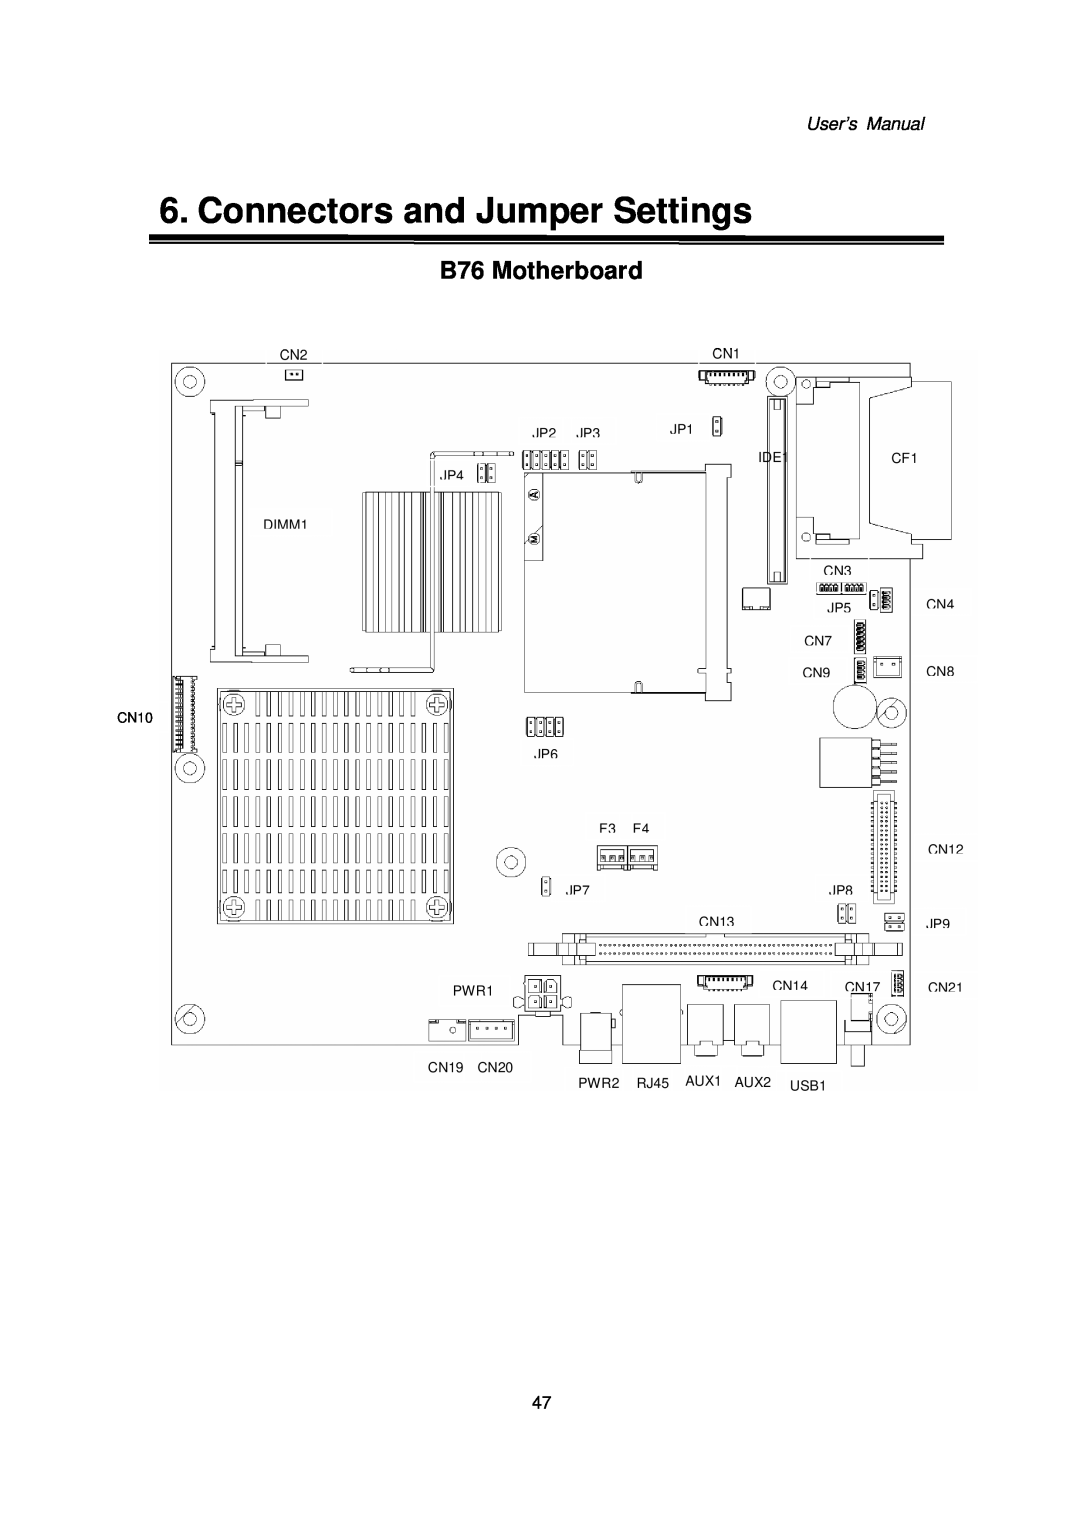 Intel Kiosk Hardware System Connectors and Jumper Settings, B76 Motherboard, User’s Manual, CN2 DIMM1, JP2 JP3 JP4, CN10 